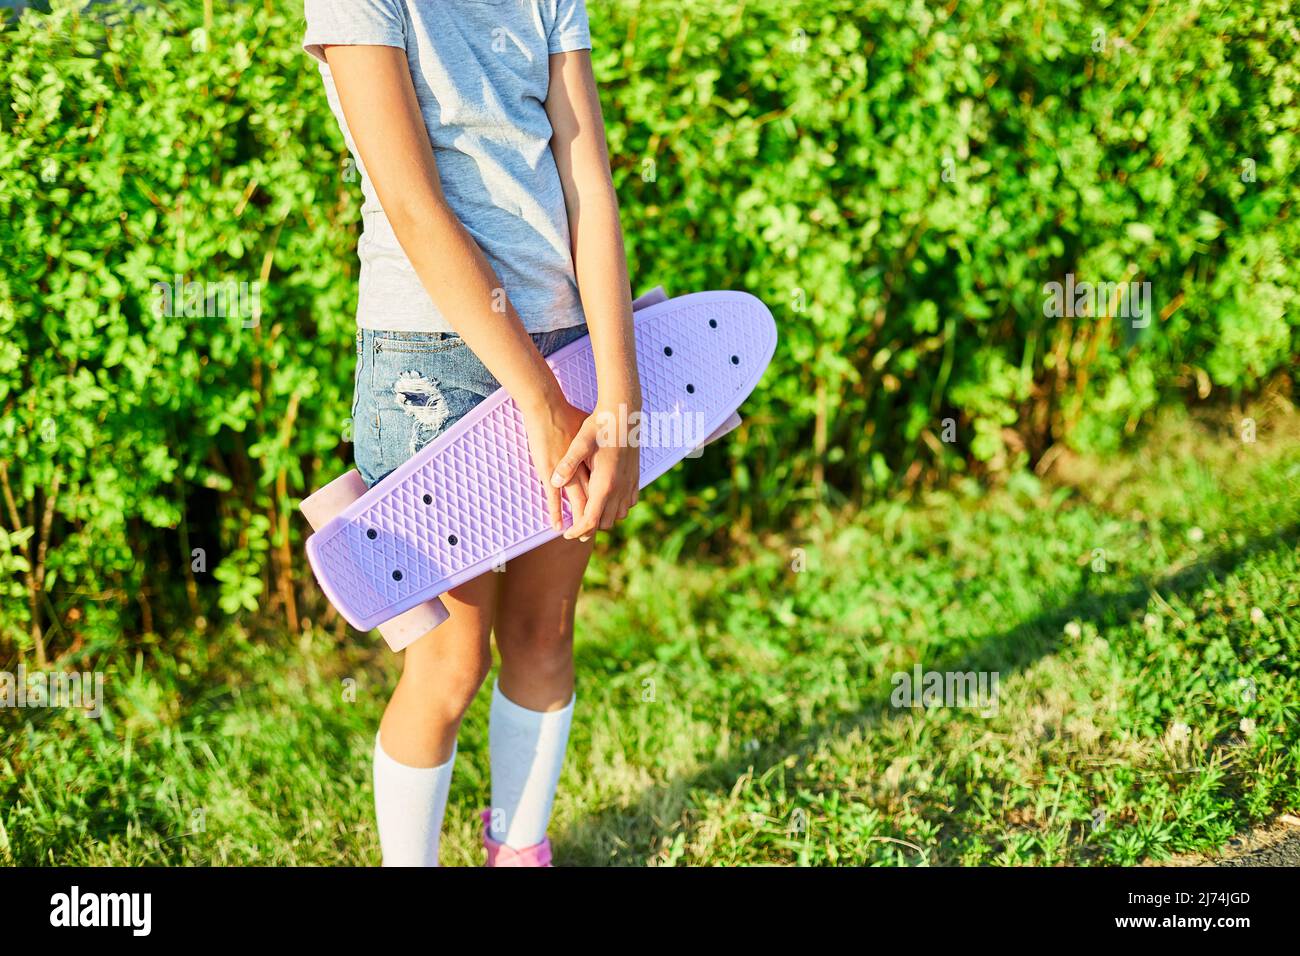 Das kleine Mädchen hält ein Skateboard, ein anonymes Kind trägt weiße  Socken und pinkfarbene Schuhe und reitet auf einem Skateboard auf einer  ländlichen Straße der Sommerstadt Stockfotografie - Alamy